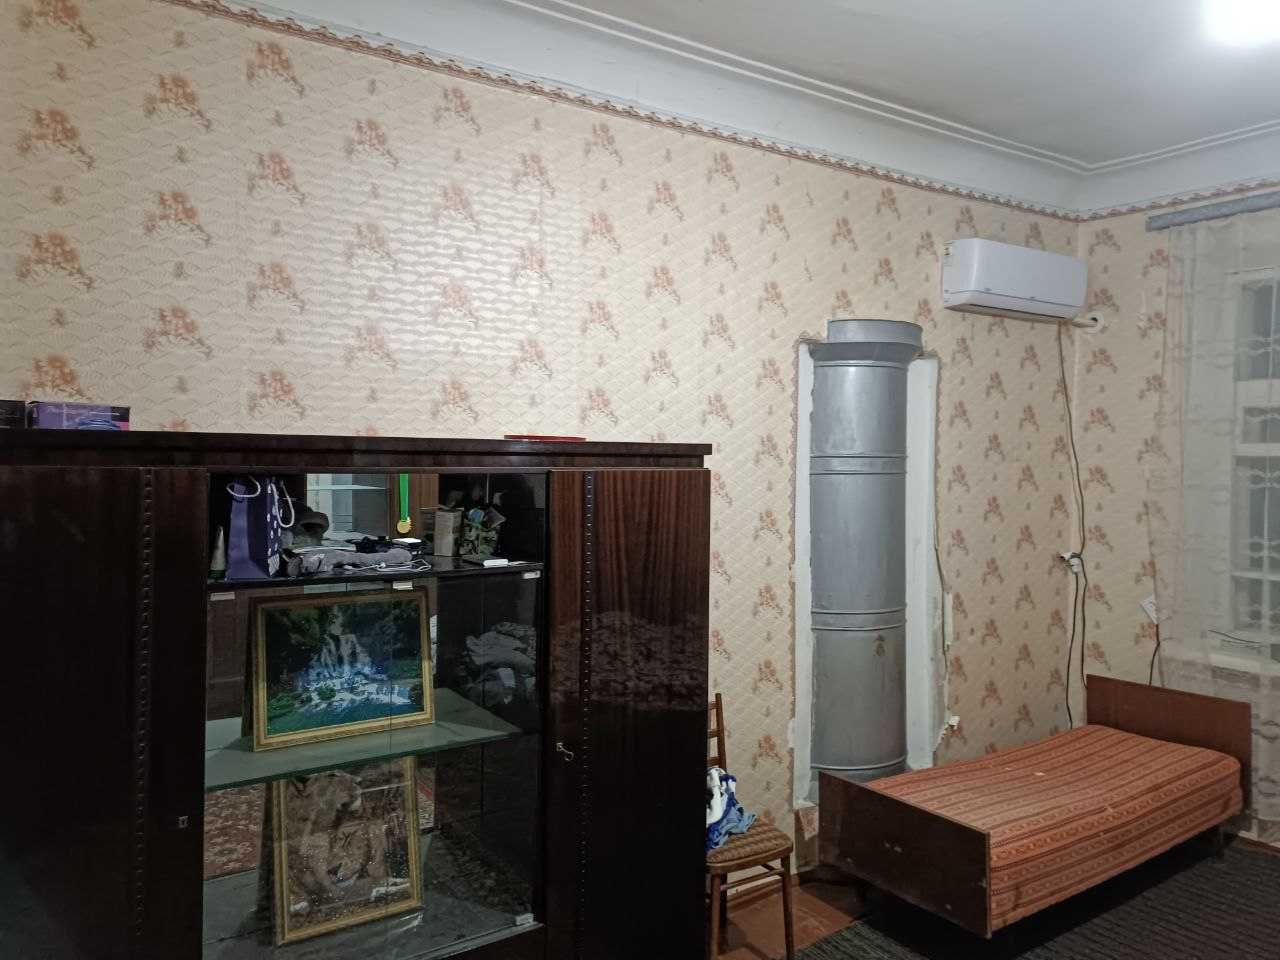 Продаётся двухкомнатная квартира в г.Чирчик центр города Навои